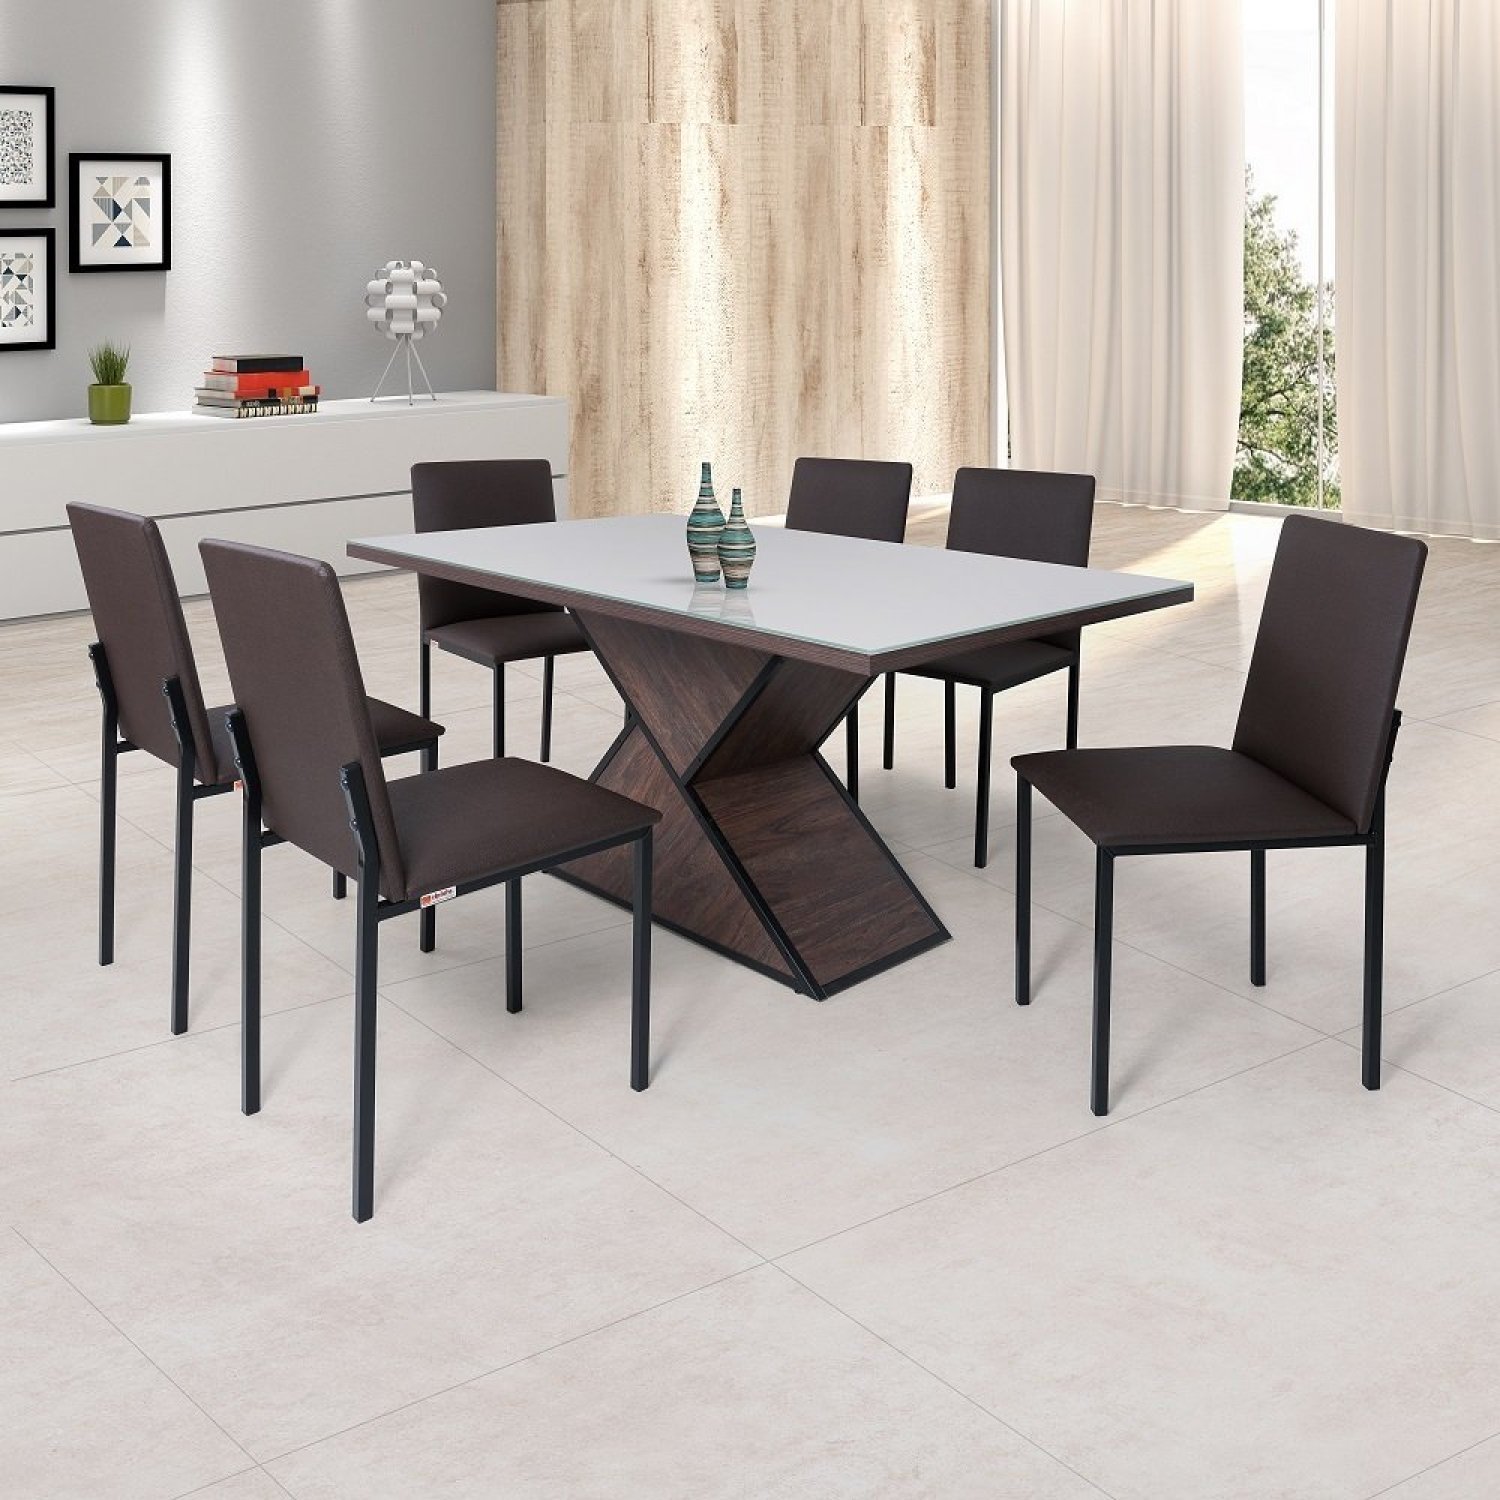 Conjunto Sala de Jantar Mesa Dubai 160x90cm Tampo Vidro com 6 Cadeiras Egito Ciplafe